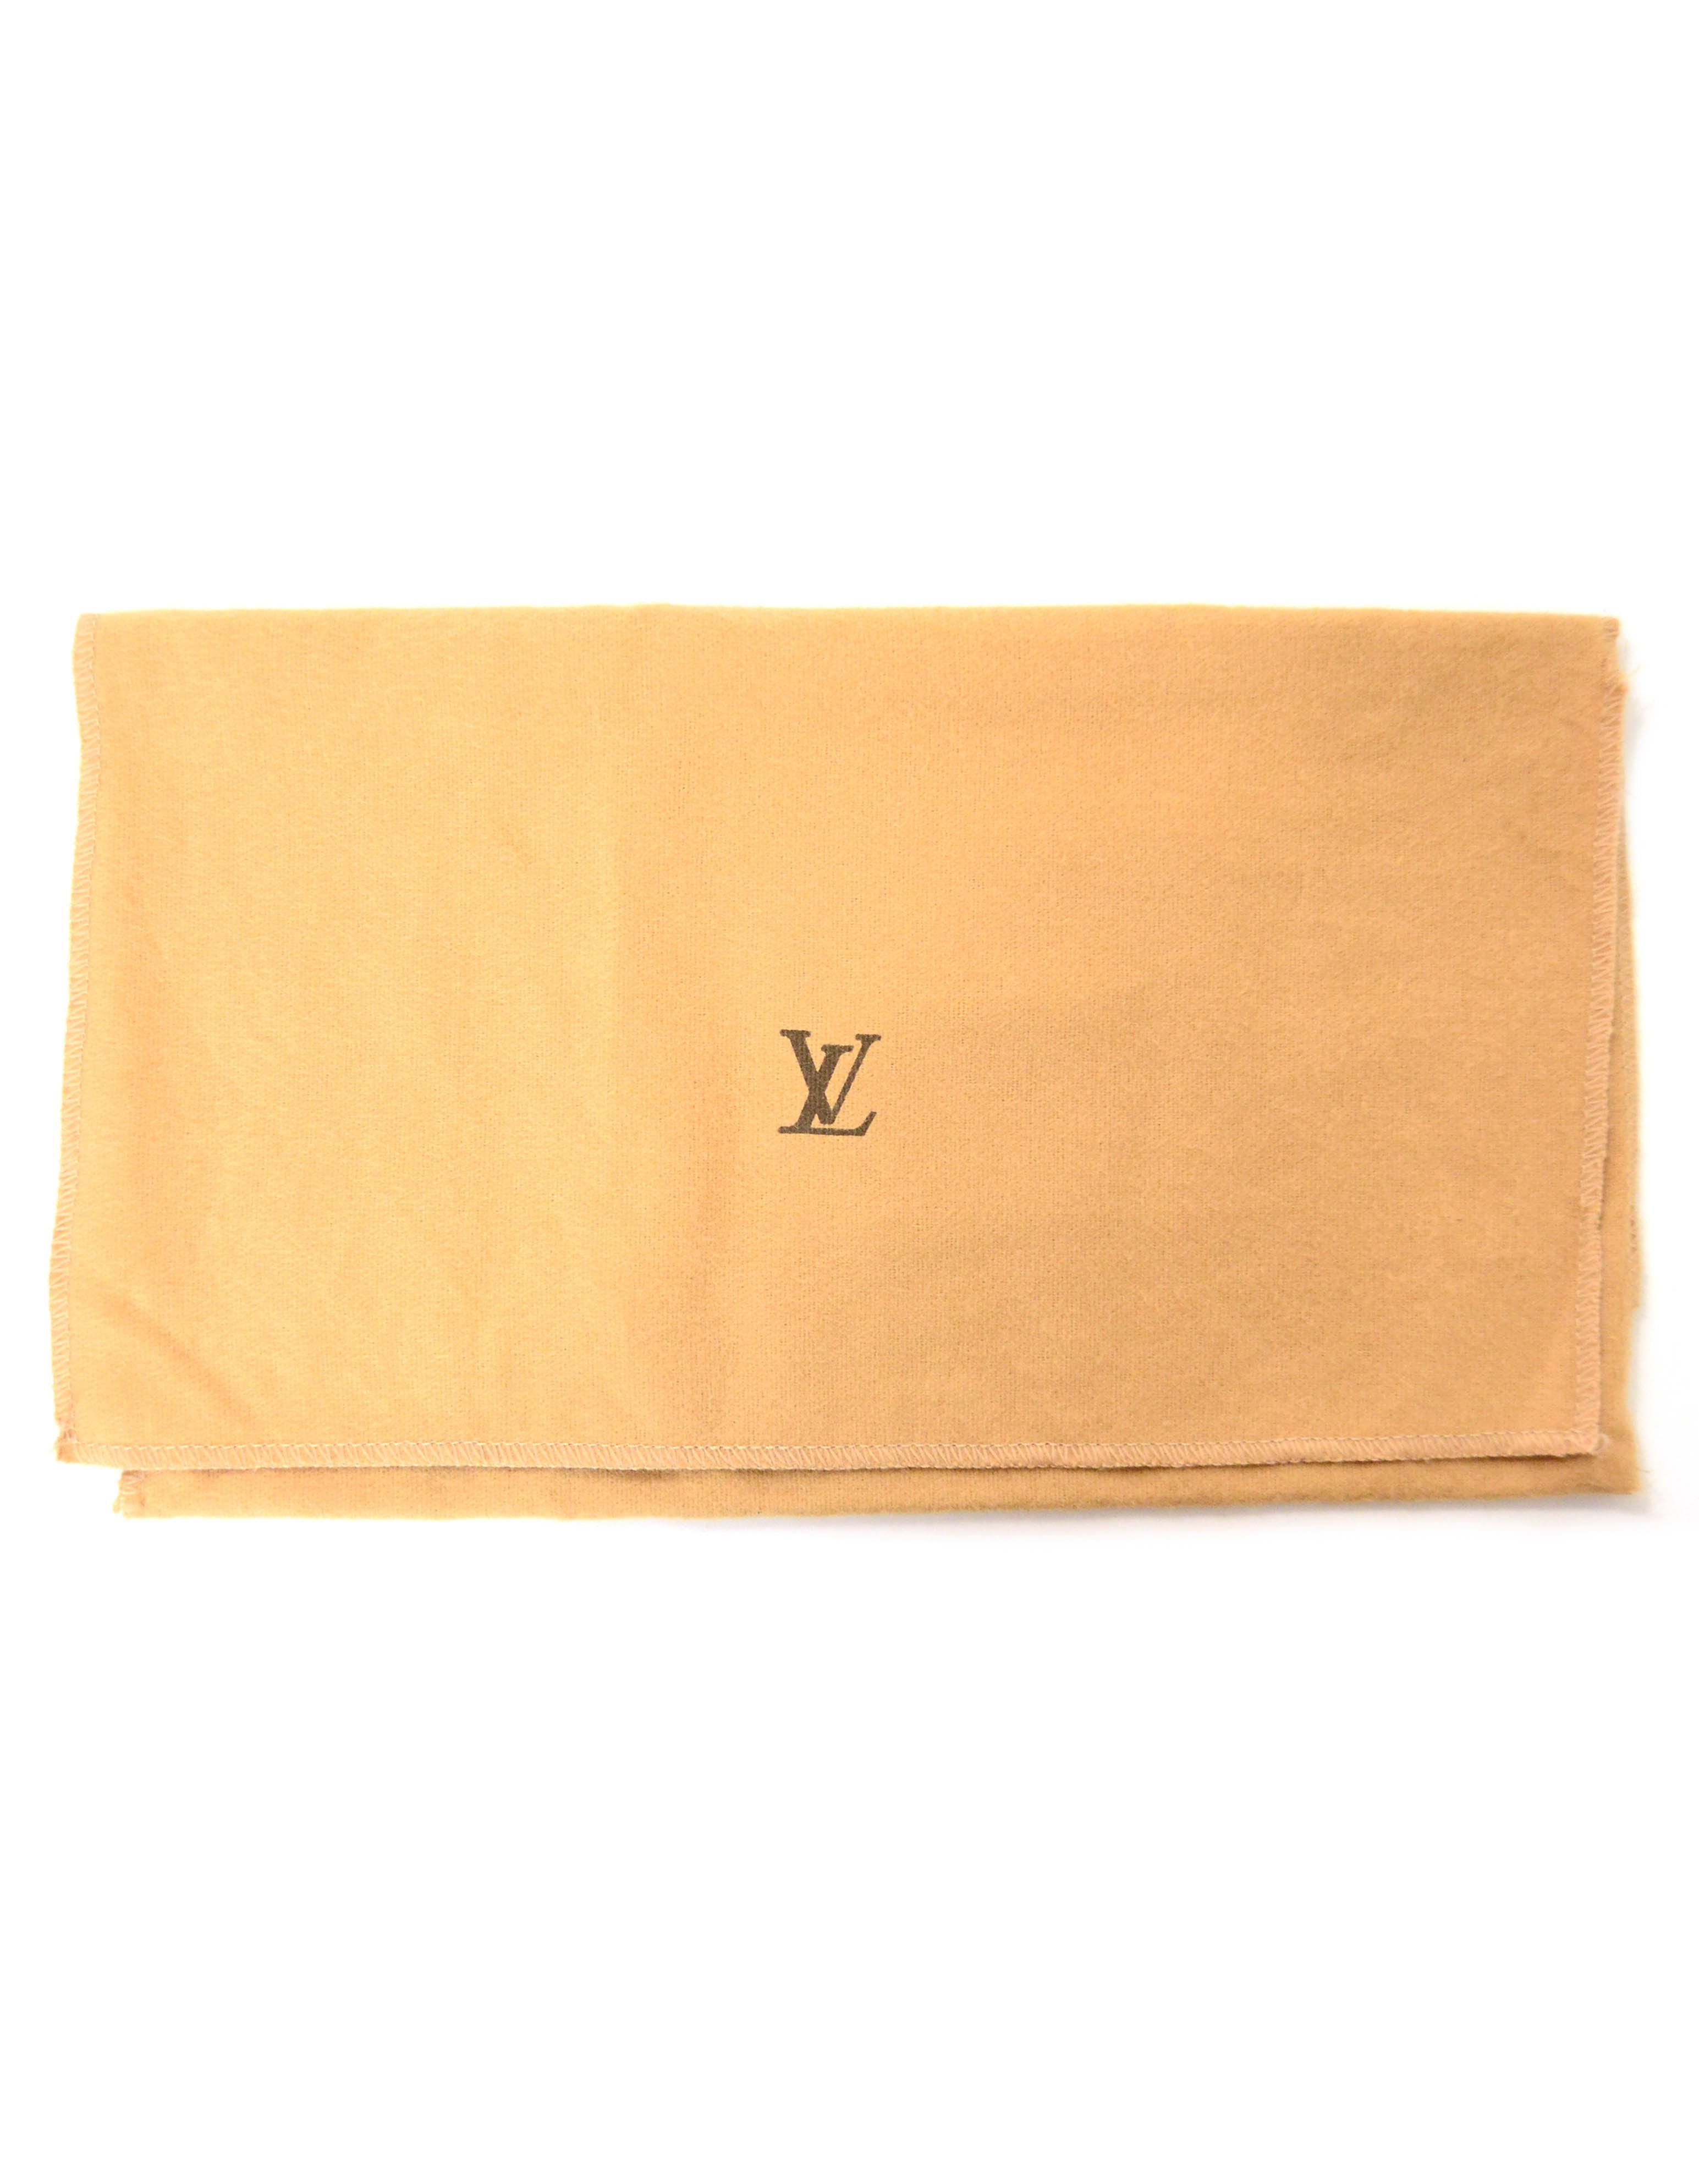 Louis Vuitton Monogram Canvas Pochette Accessories Bag